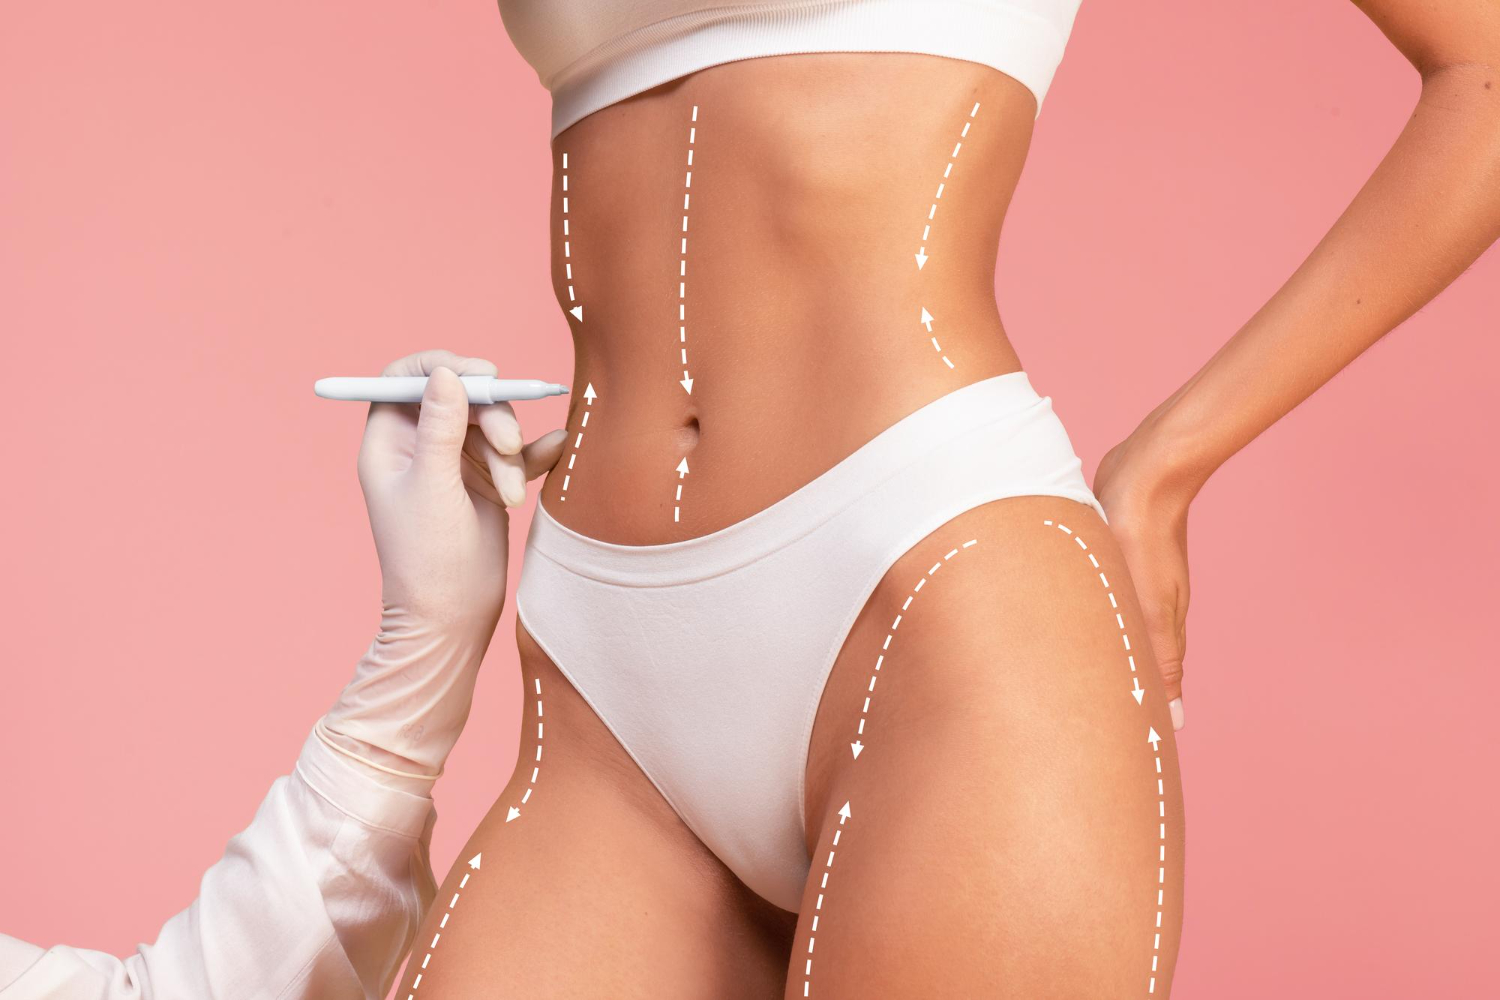 Liposuction Services in Miami